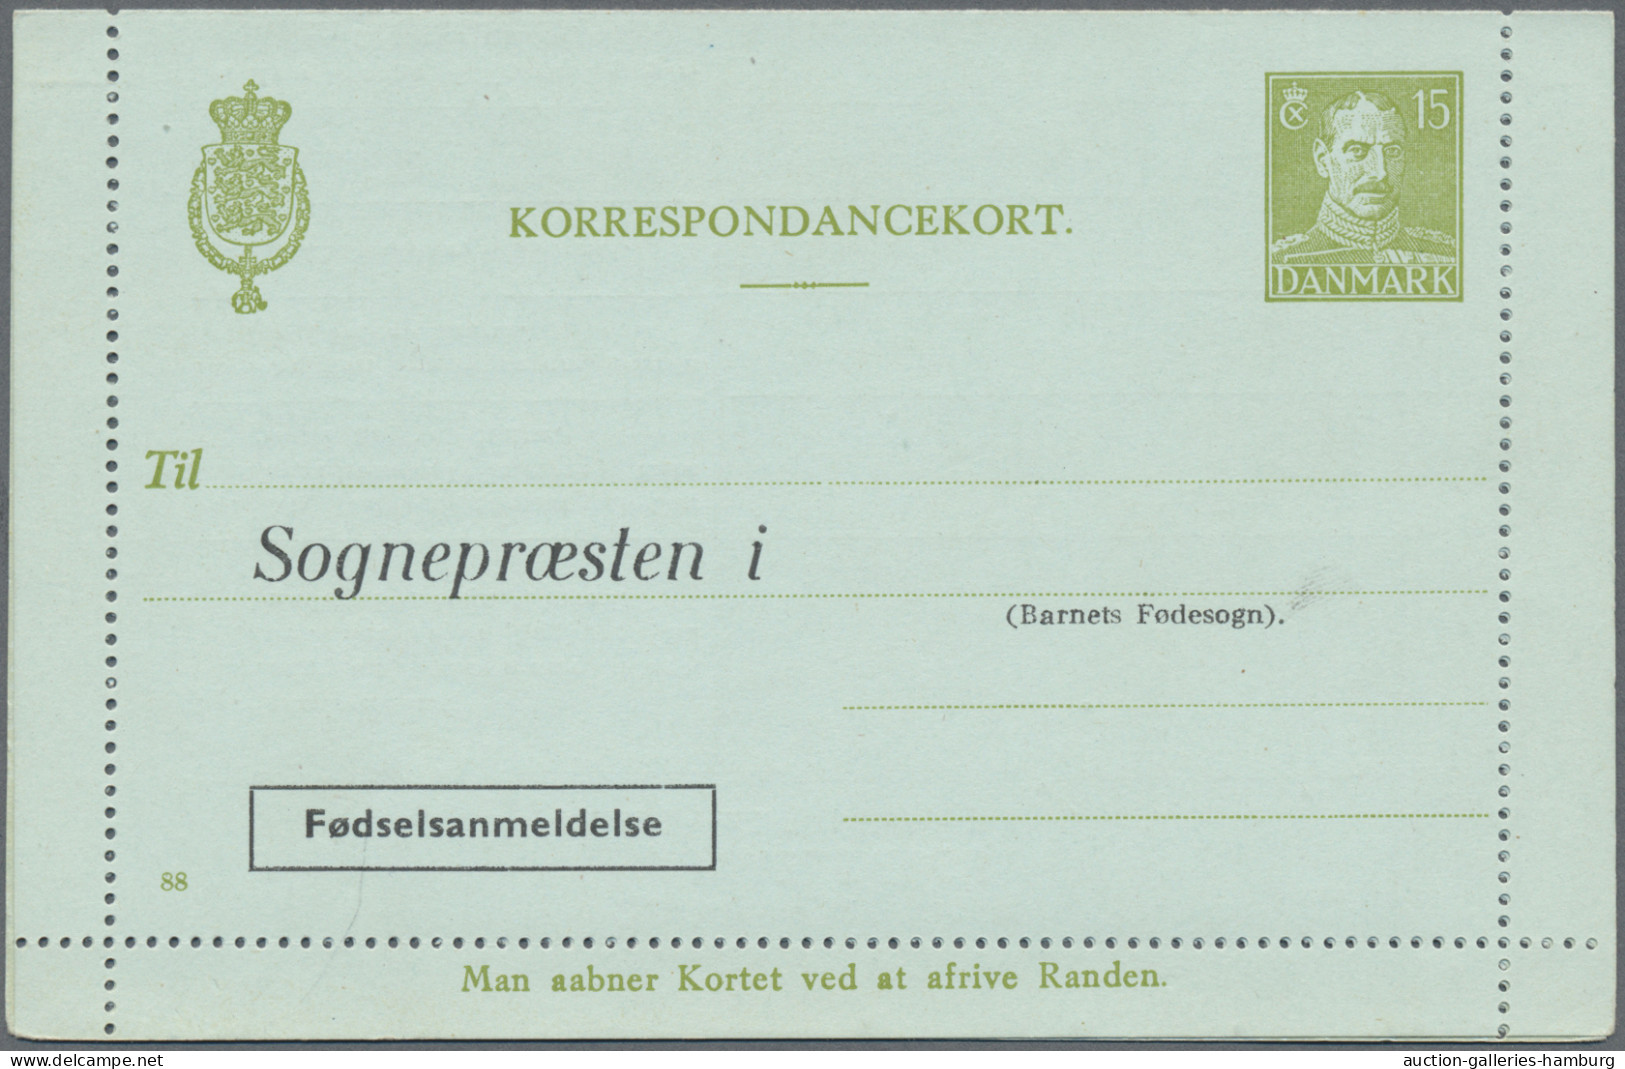 Denmark - Postal Stationery: 1953/1965, Letter Cards For Population Register, Lo - Enteros Postales